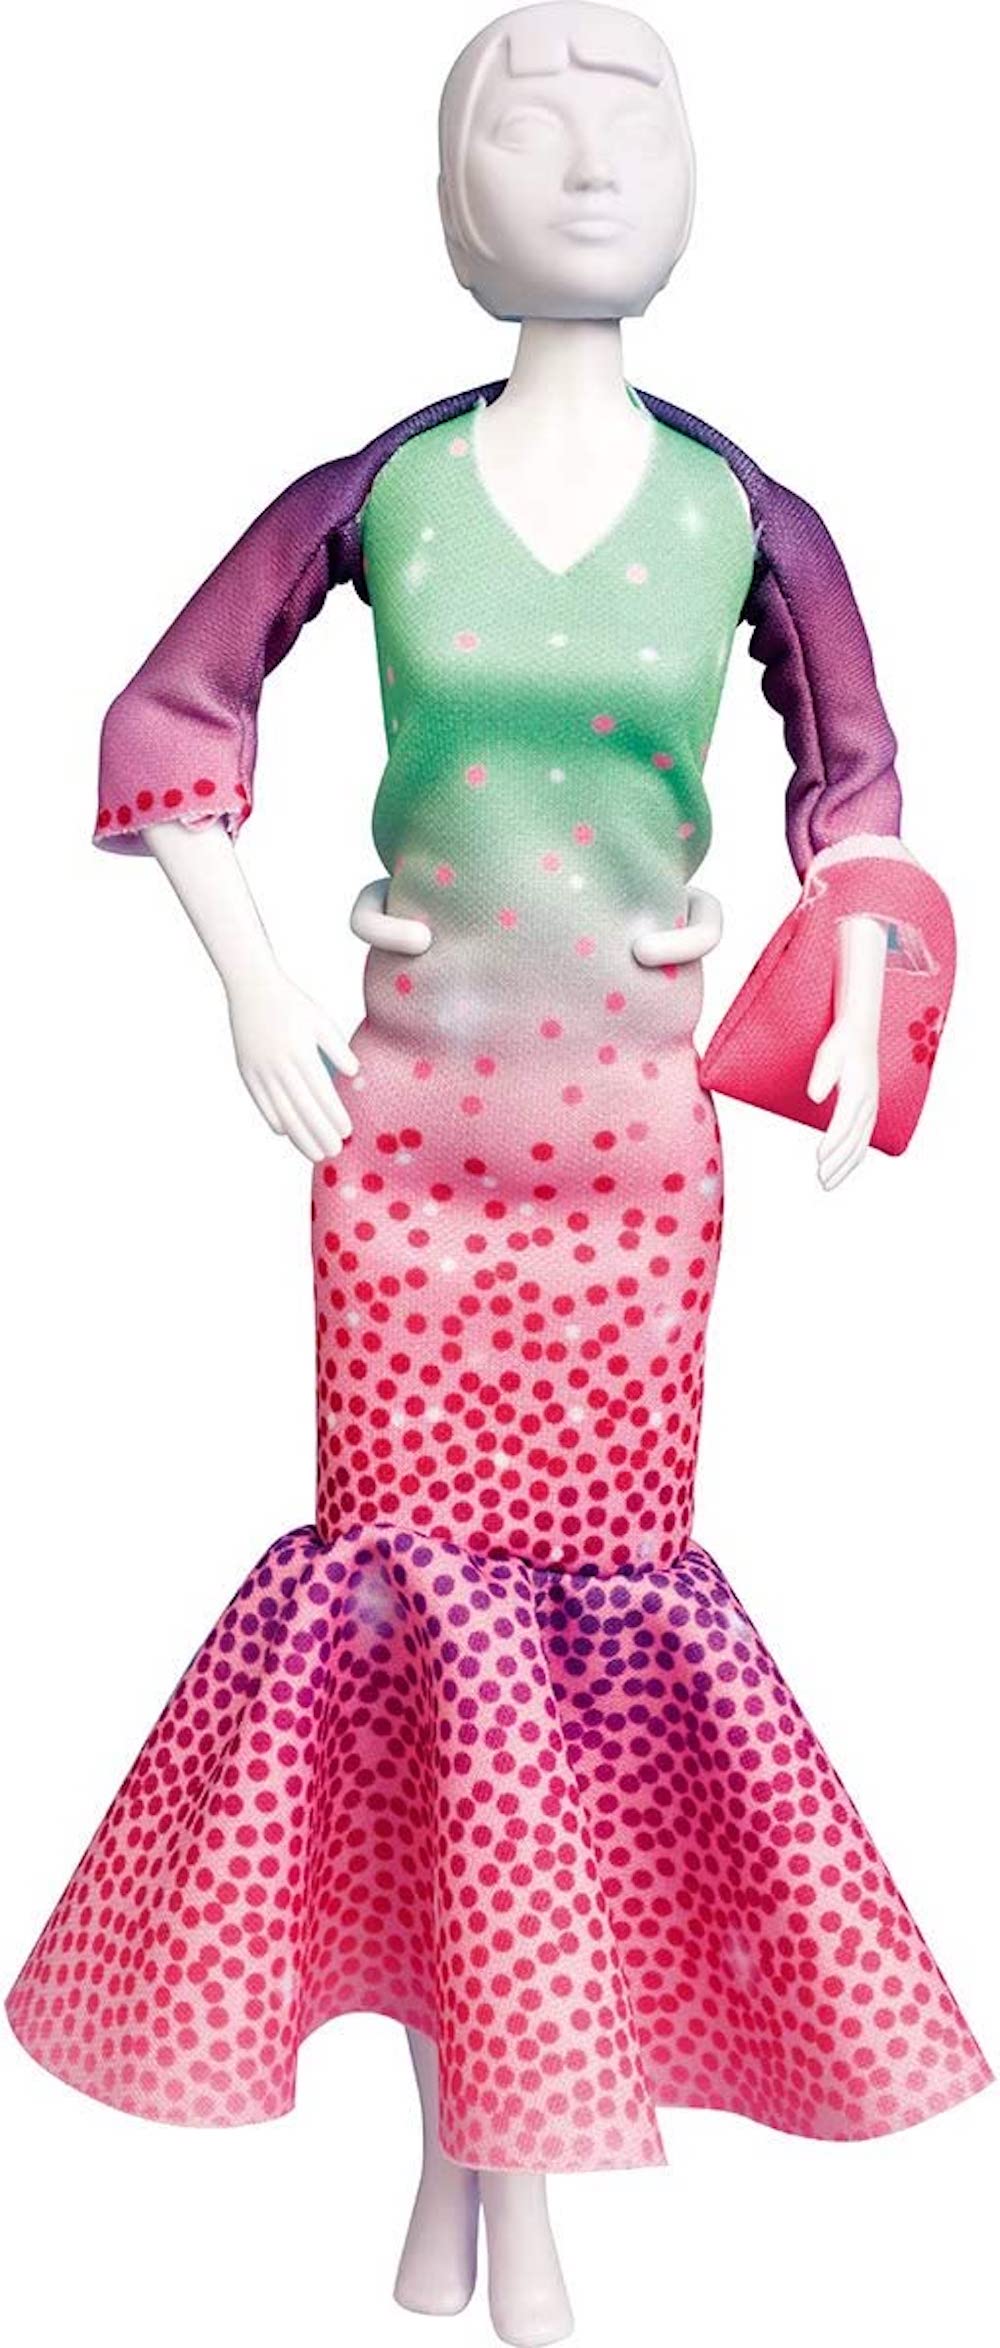 Dress your Doll  Nähe selbst ein Outfit für Deine Mode Puppe!  29cm  Billy mint